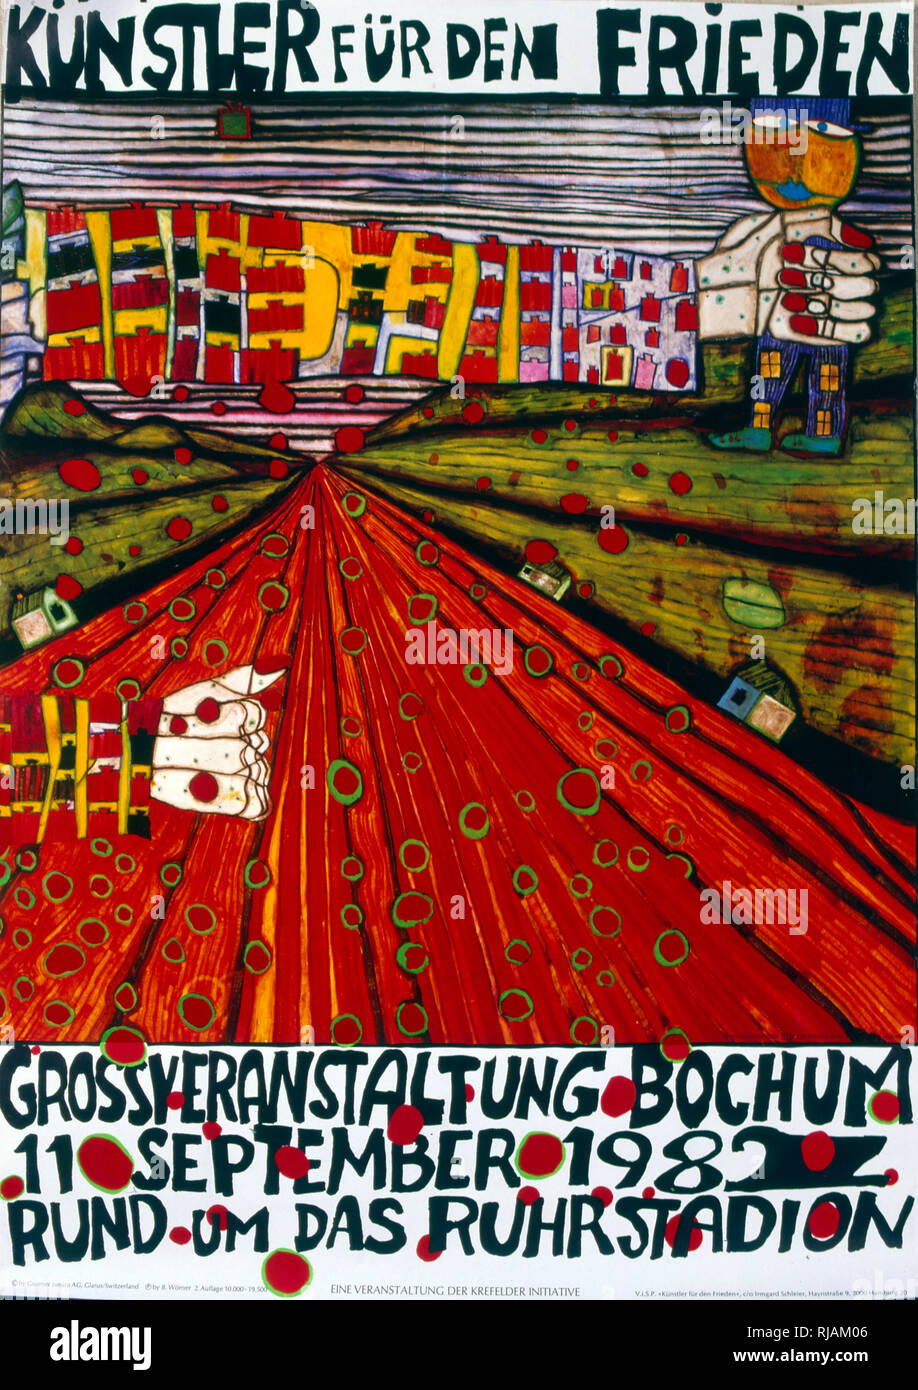 Kunstler fur den frieden', s'engager pour la paix. anti-guerre nucléaire, l'affiche 1982. À l'occasion d'un concert-bénéfice et de démonstration dans le stade à Bochum, le 11 septembre 1982, contre le déploiement des missiles de croisière et Pershing-2 en Europe centrale. L'affiche était accompagné d'un deuxième conçu par Hundertwasser, énumérant tous les noms des artistes participants et les bandes Banque D'Images